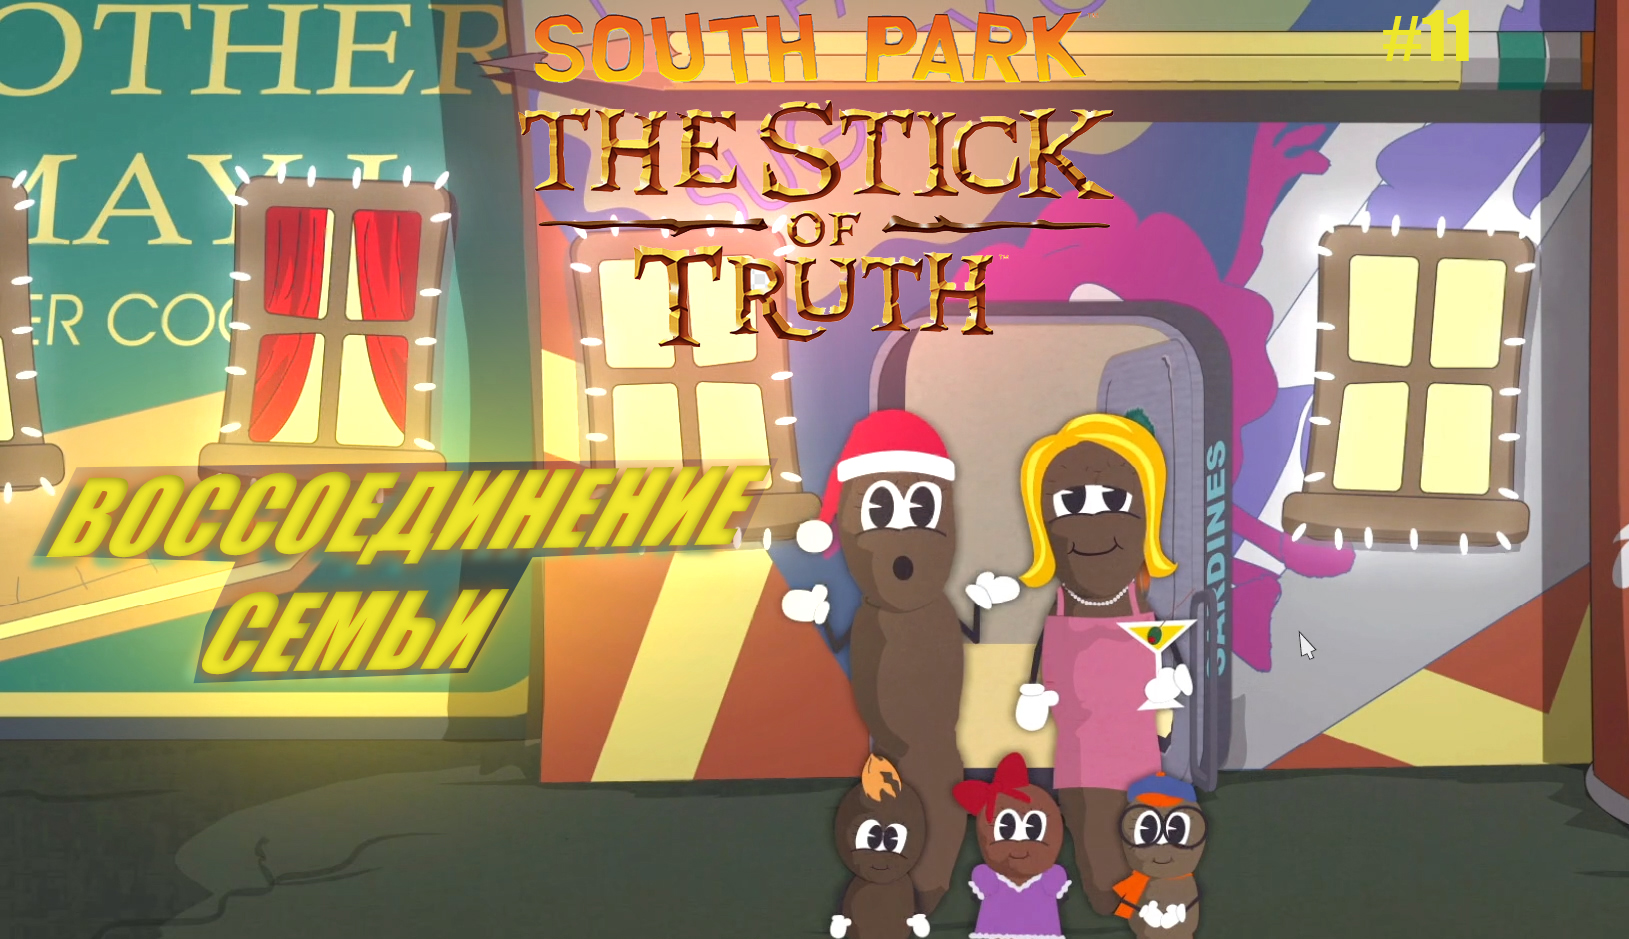 South Park: The Stick of Truth #11. ВОССОЕДИНЕНИЕ СЕМЬИ.